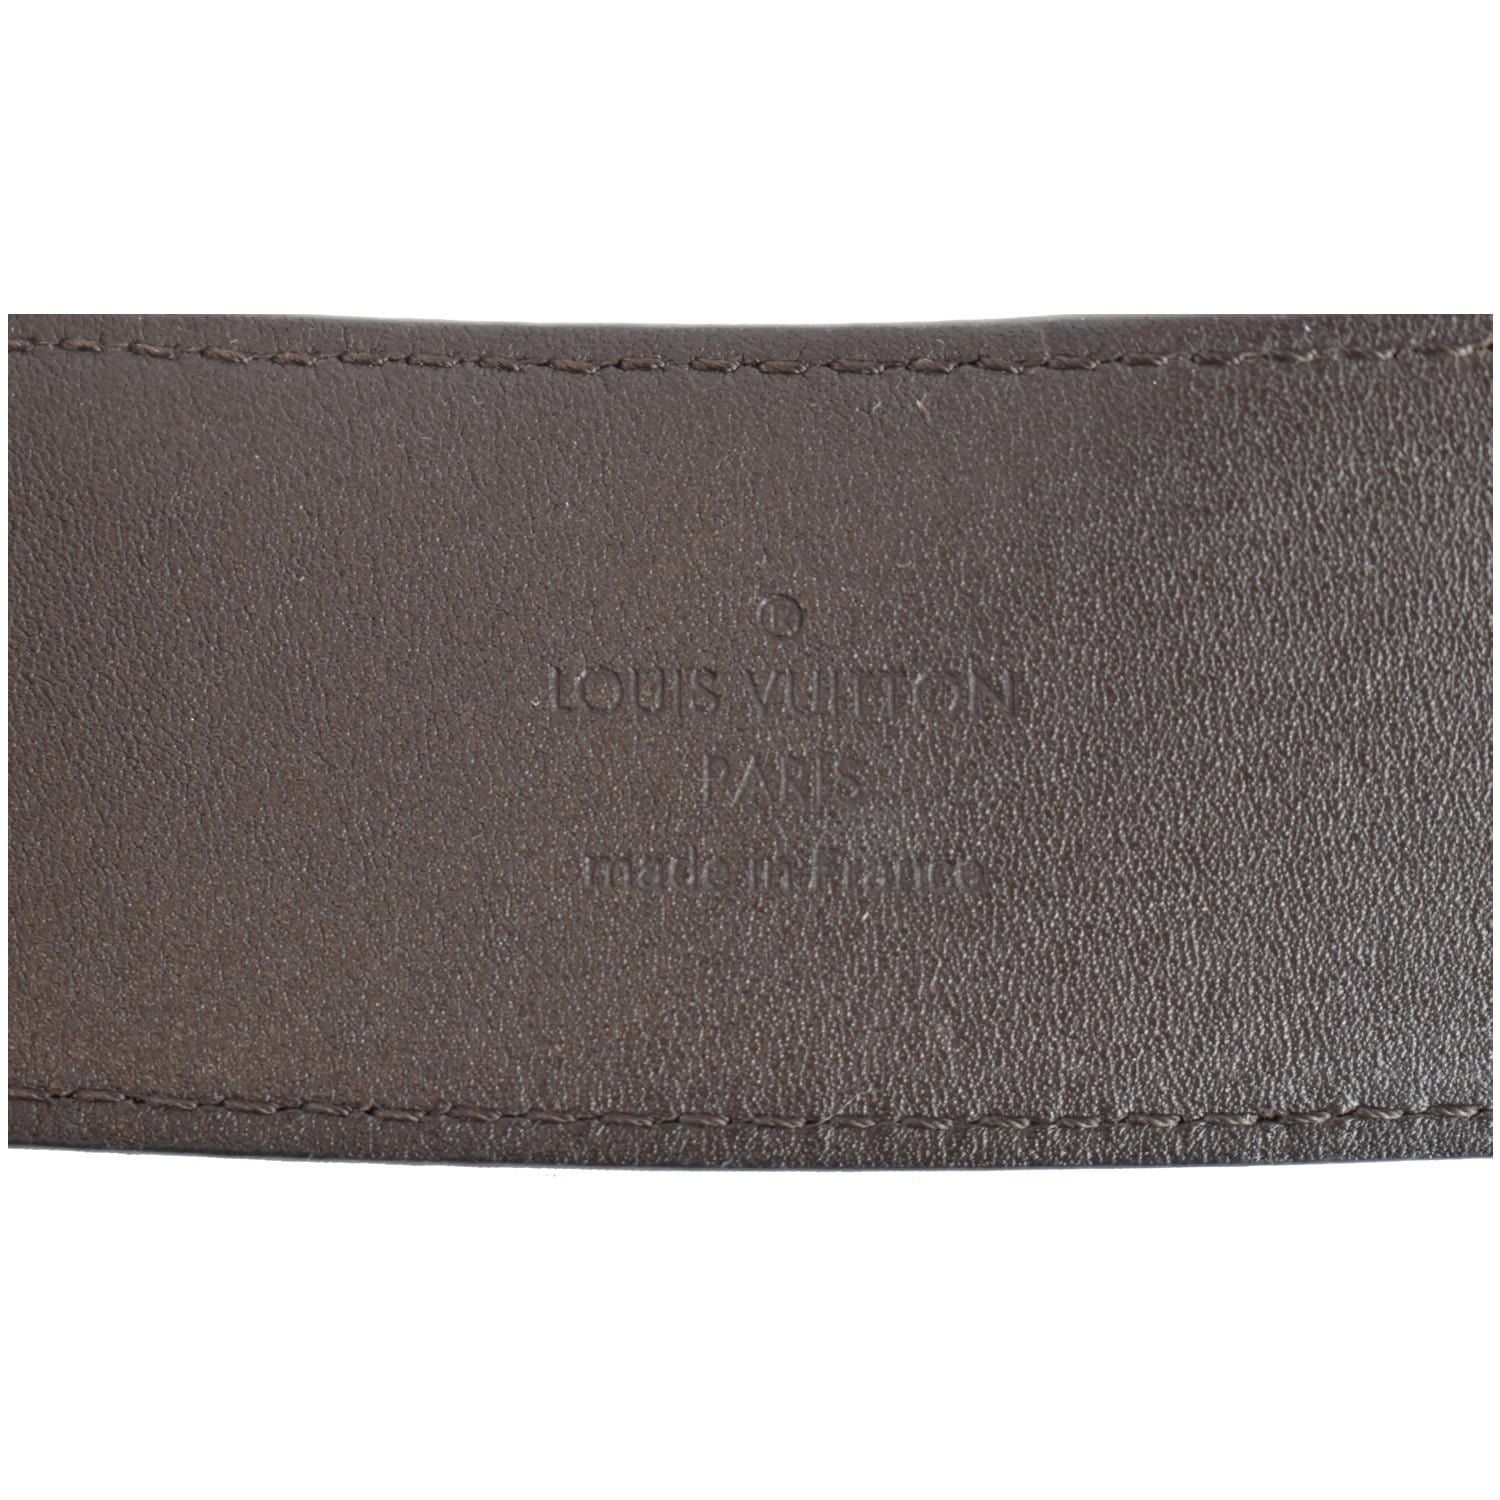 Louis Vuitton Cinturón